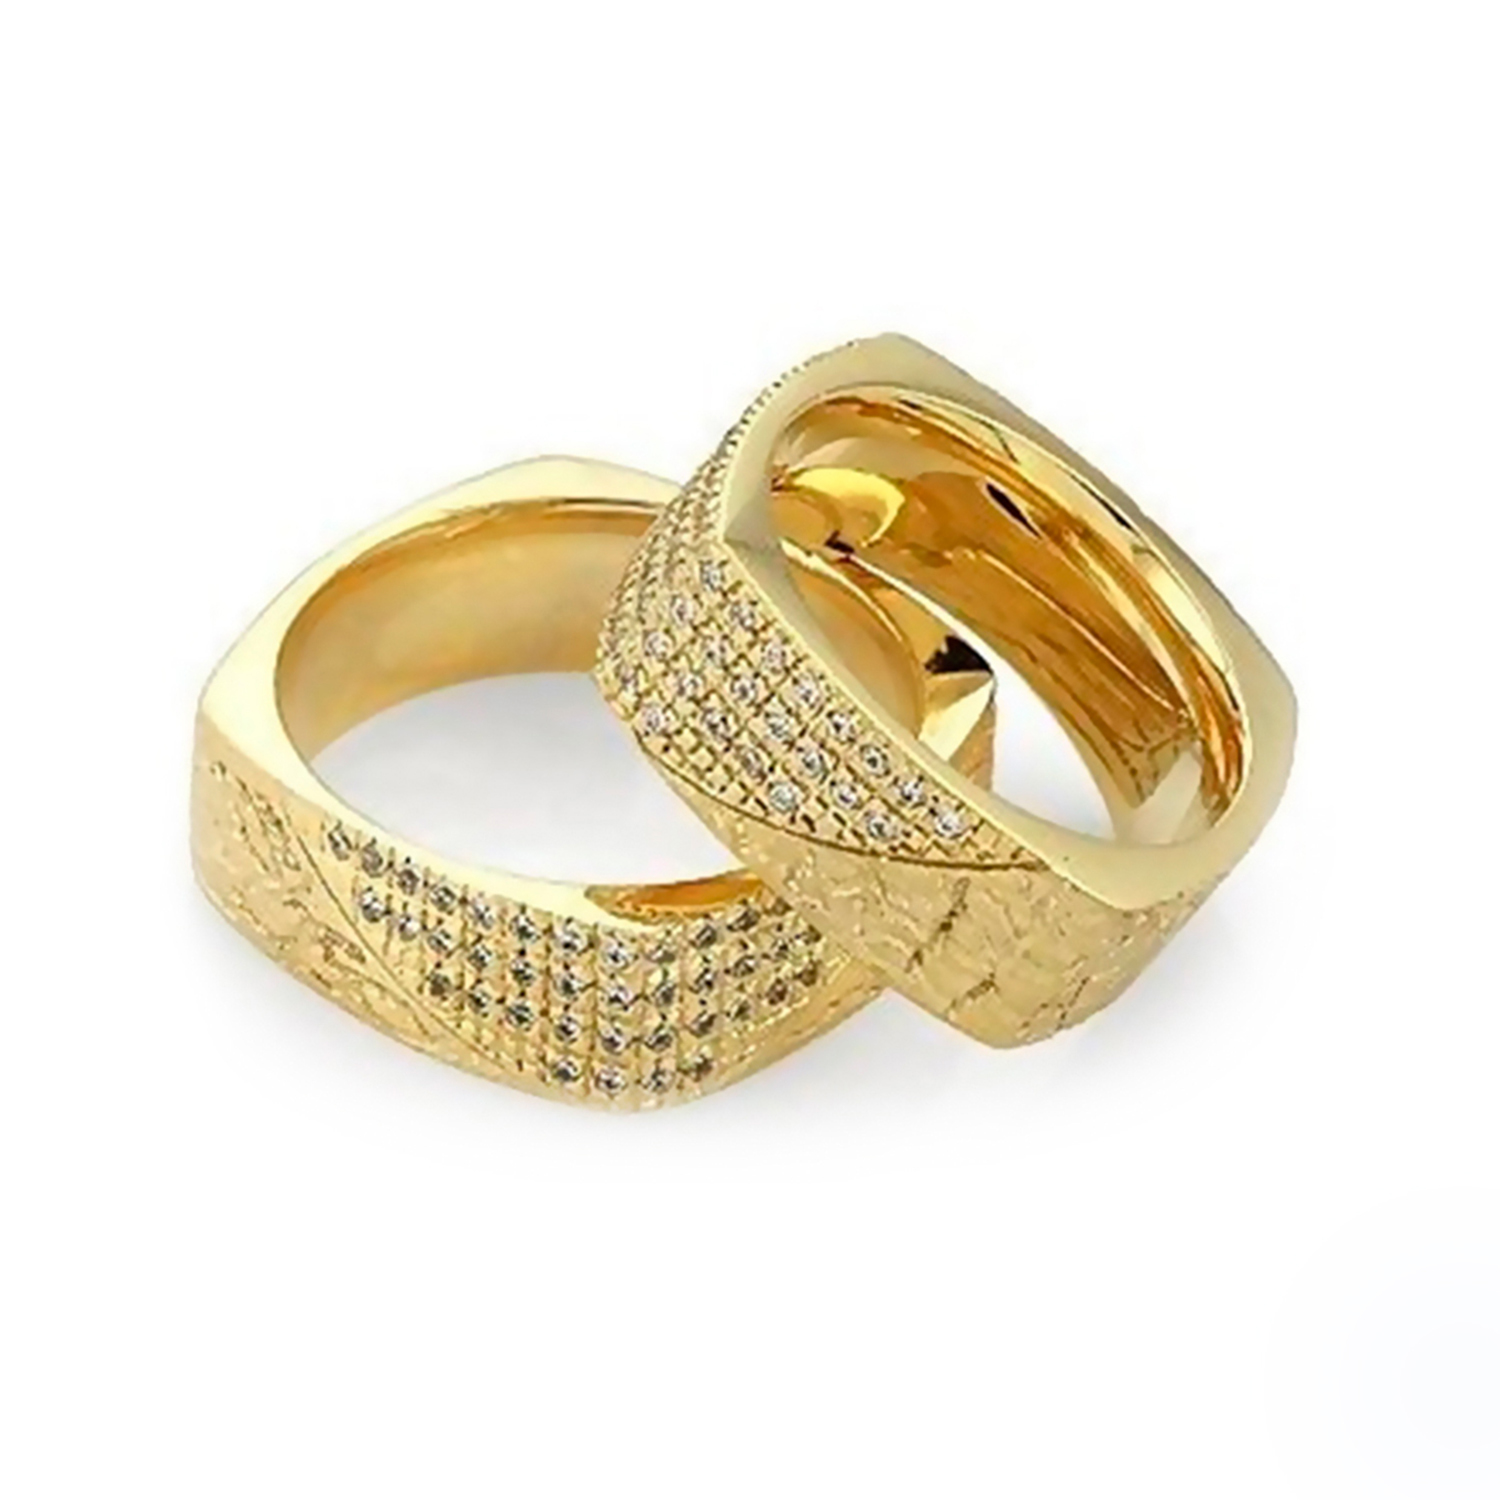 Лимонное золото 585. Обручальные кольца парные золотые 585 пробы. Обручальные кольца золото 585. Обручальные кольца парные 585. Обручальные кольца парные золотые 585.